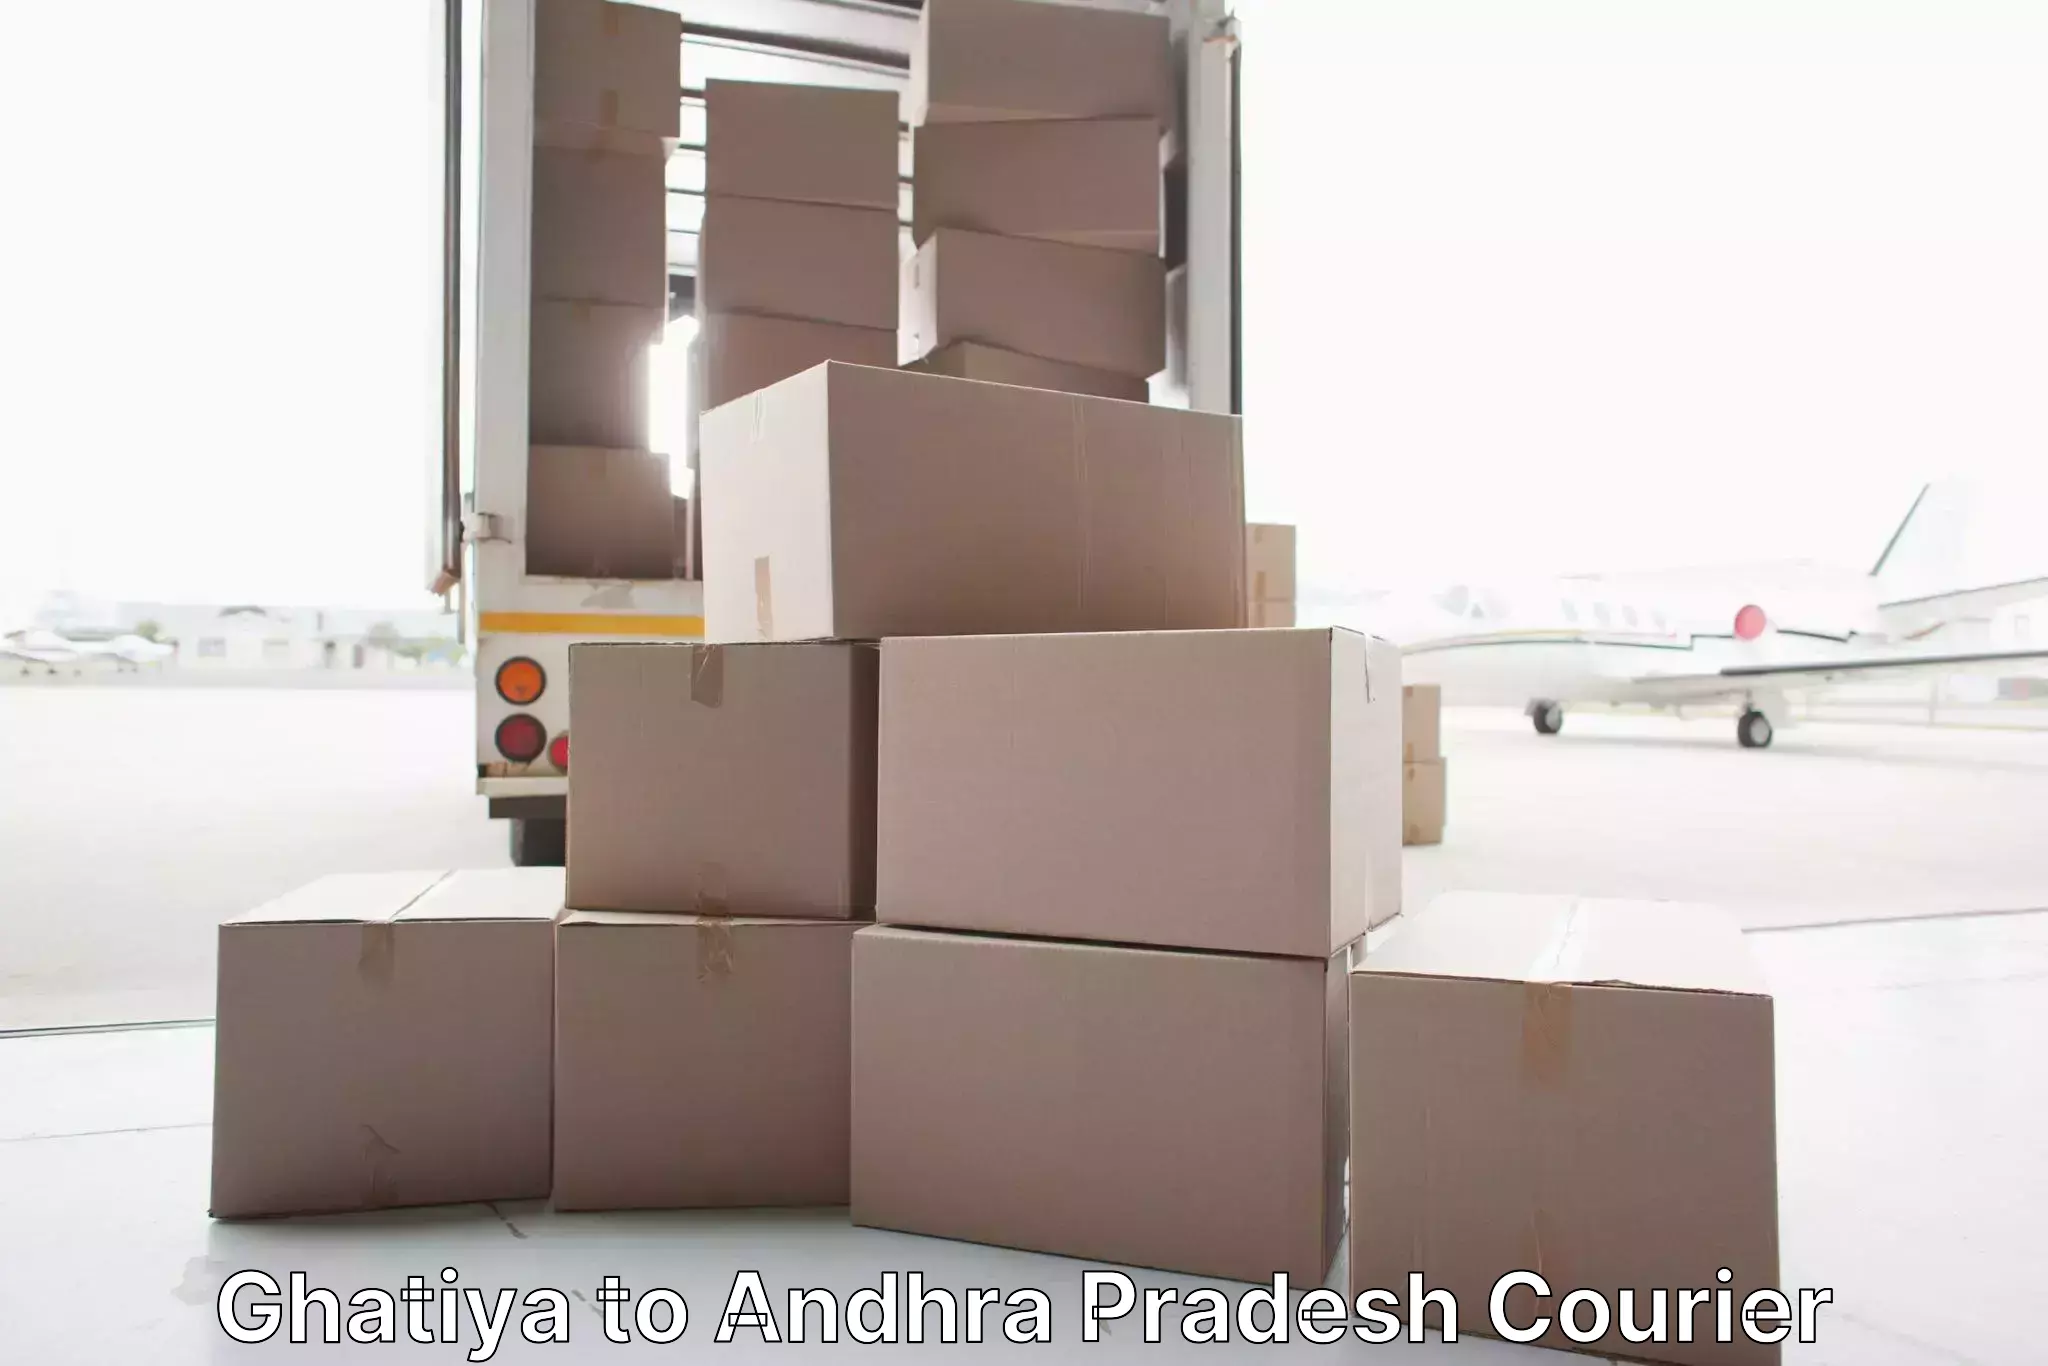 Furniture transport solutions in Ghatiya to Kaikaluru